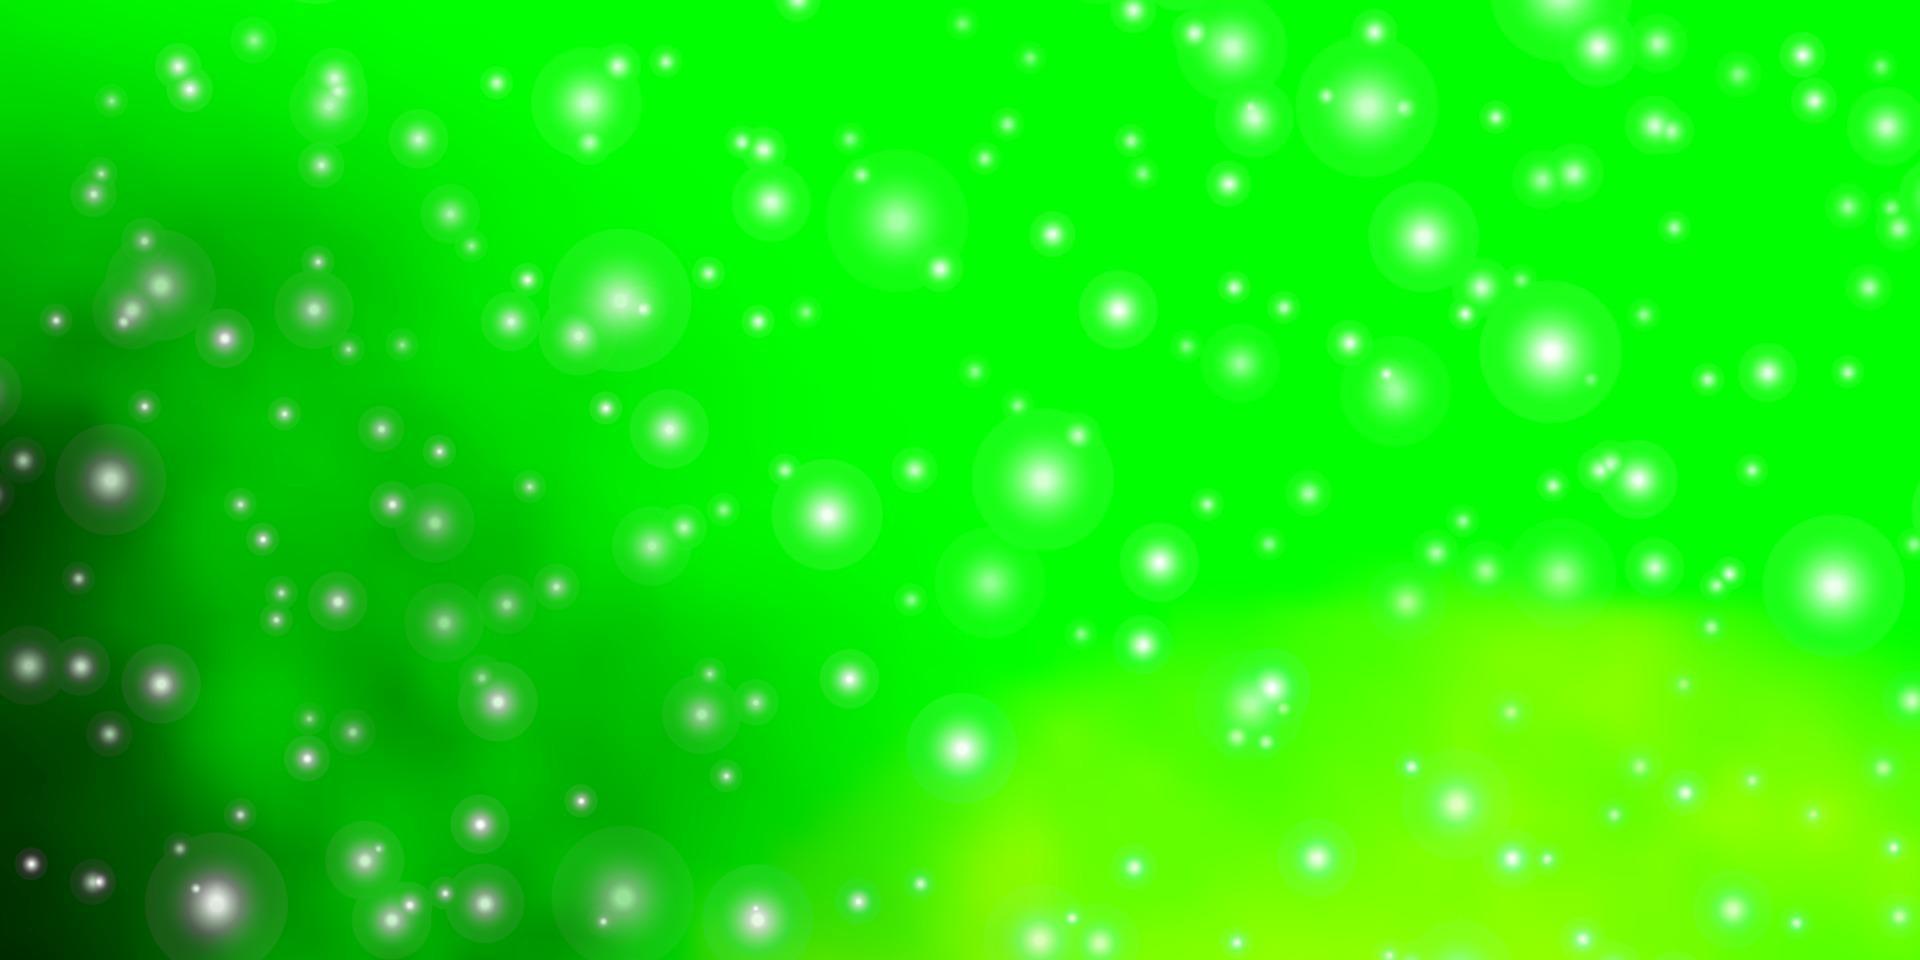 ljusgrön vektormall med neonstjärnor. vektor